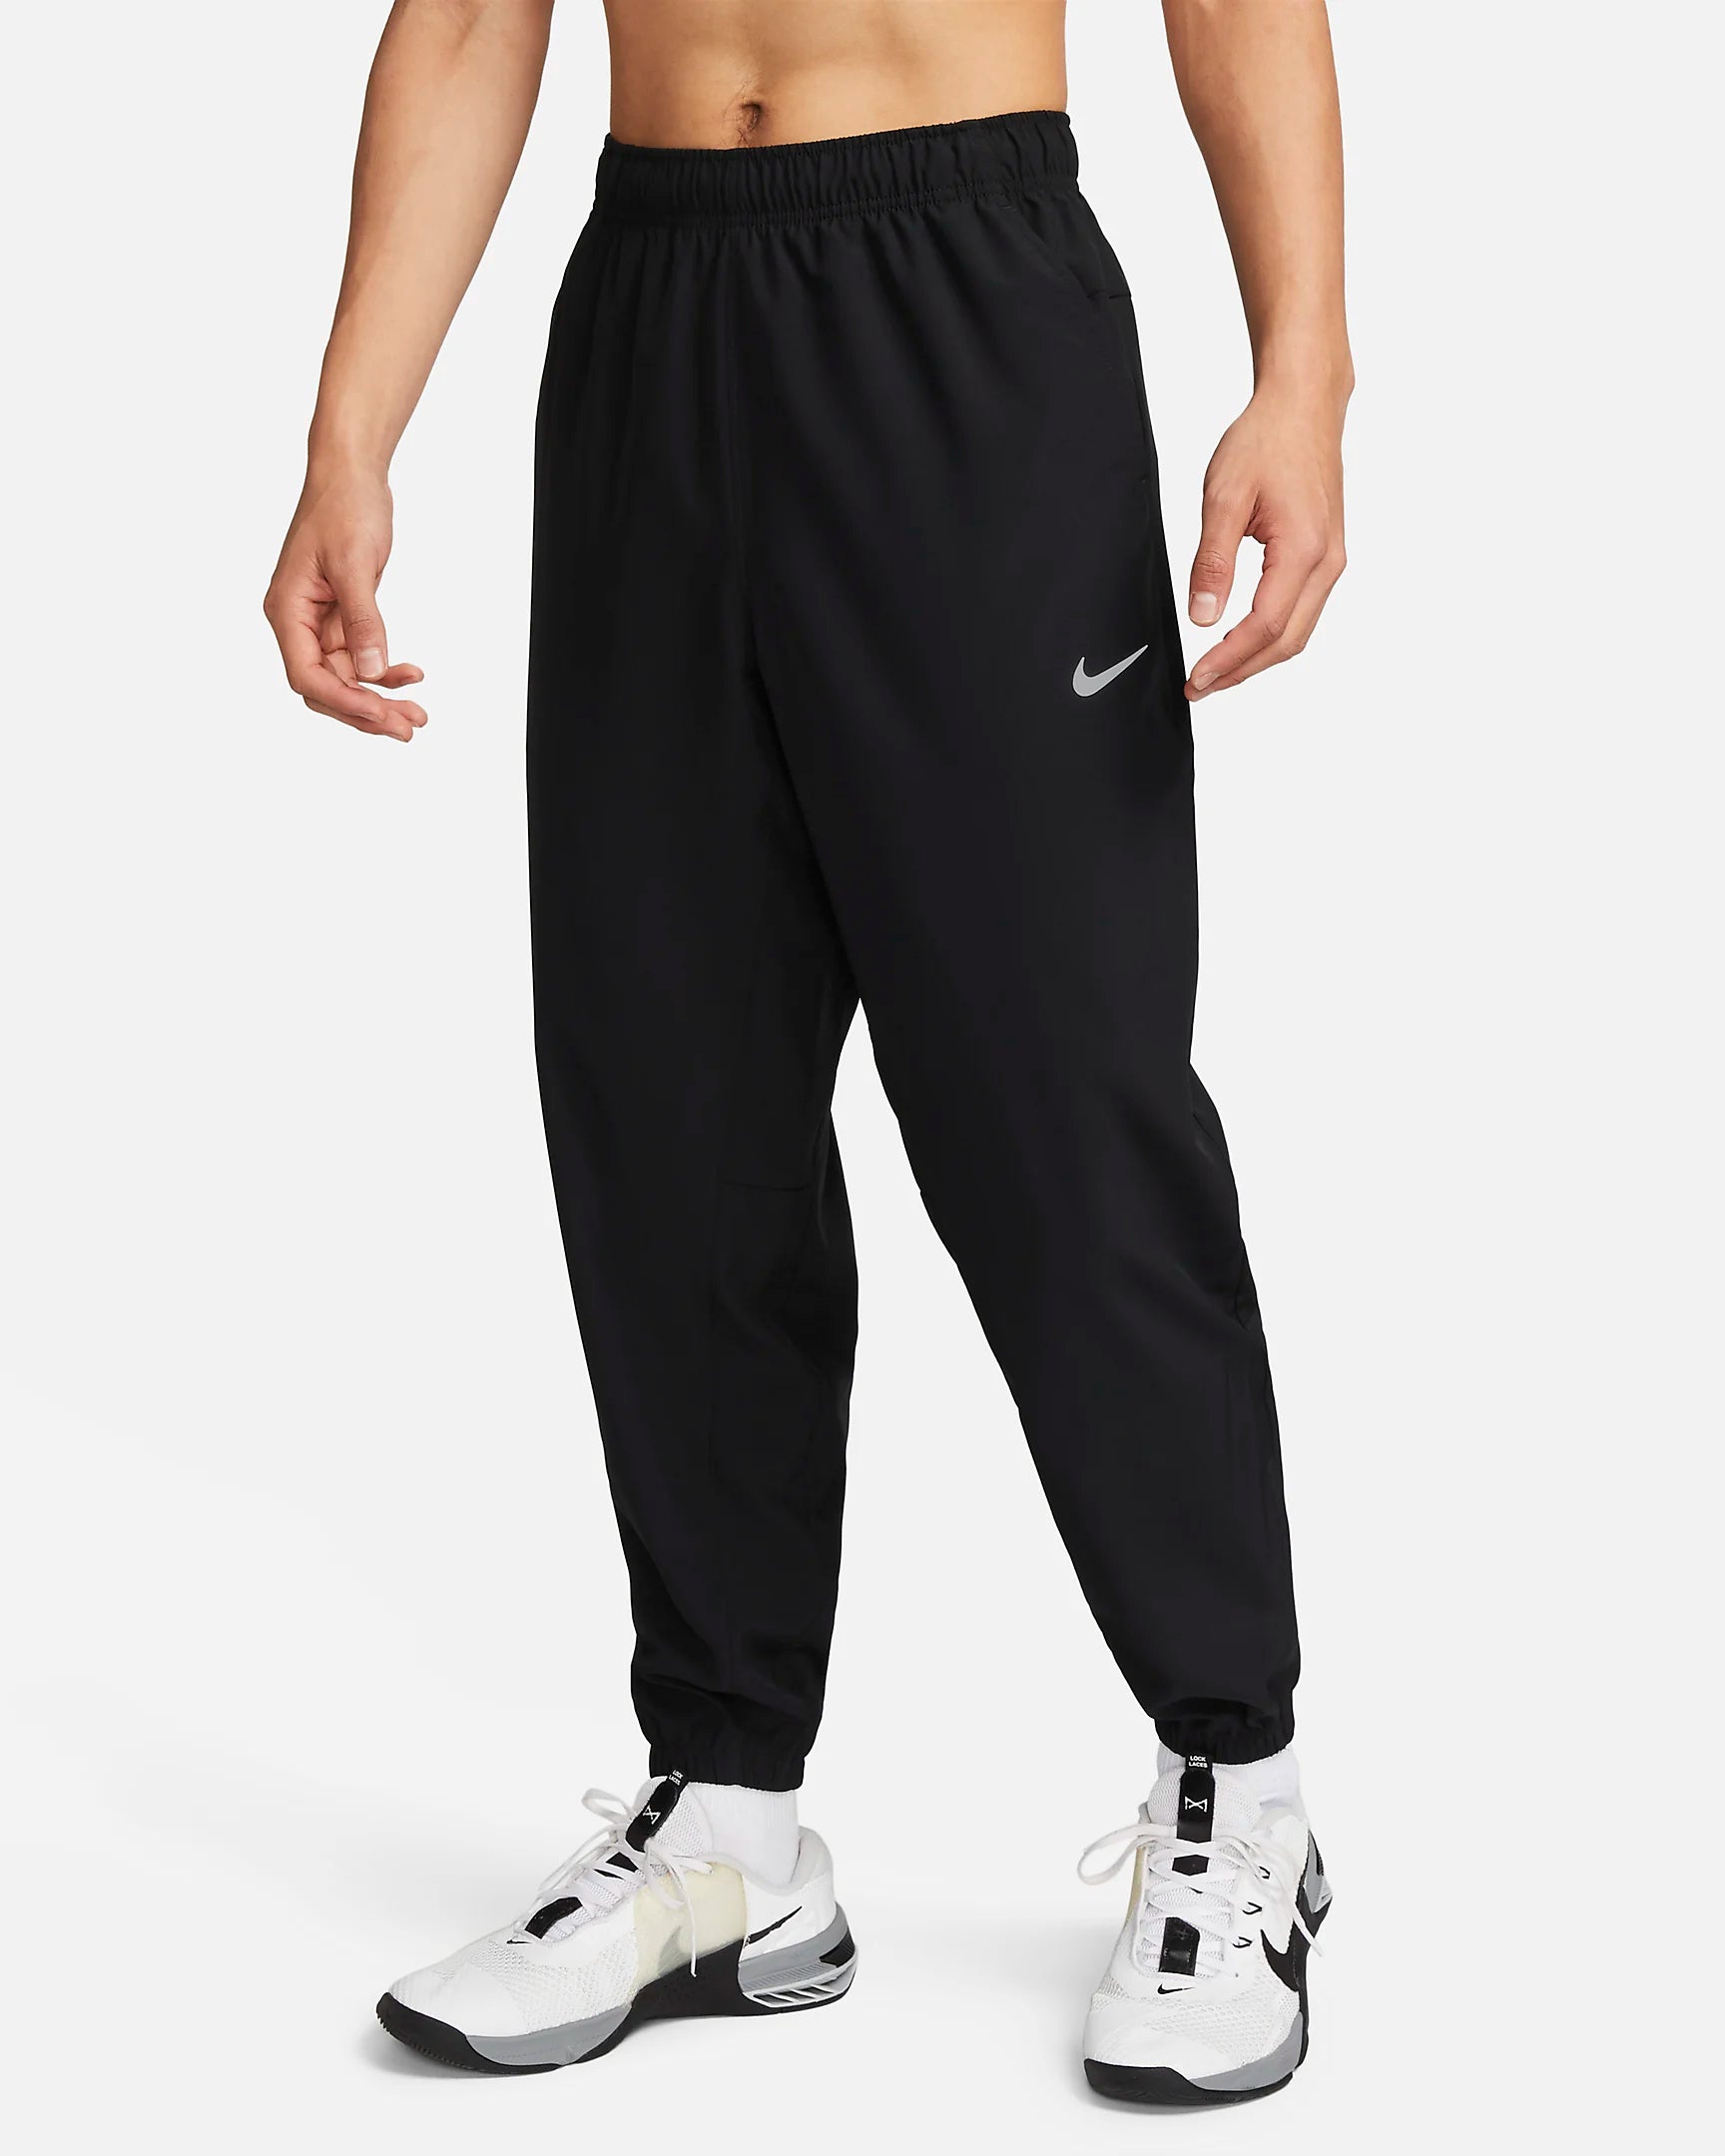 Pantaloni Nike Form - neri